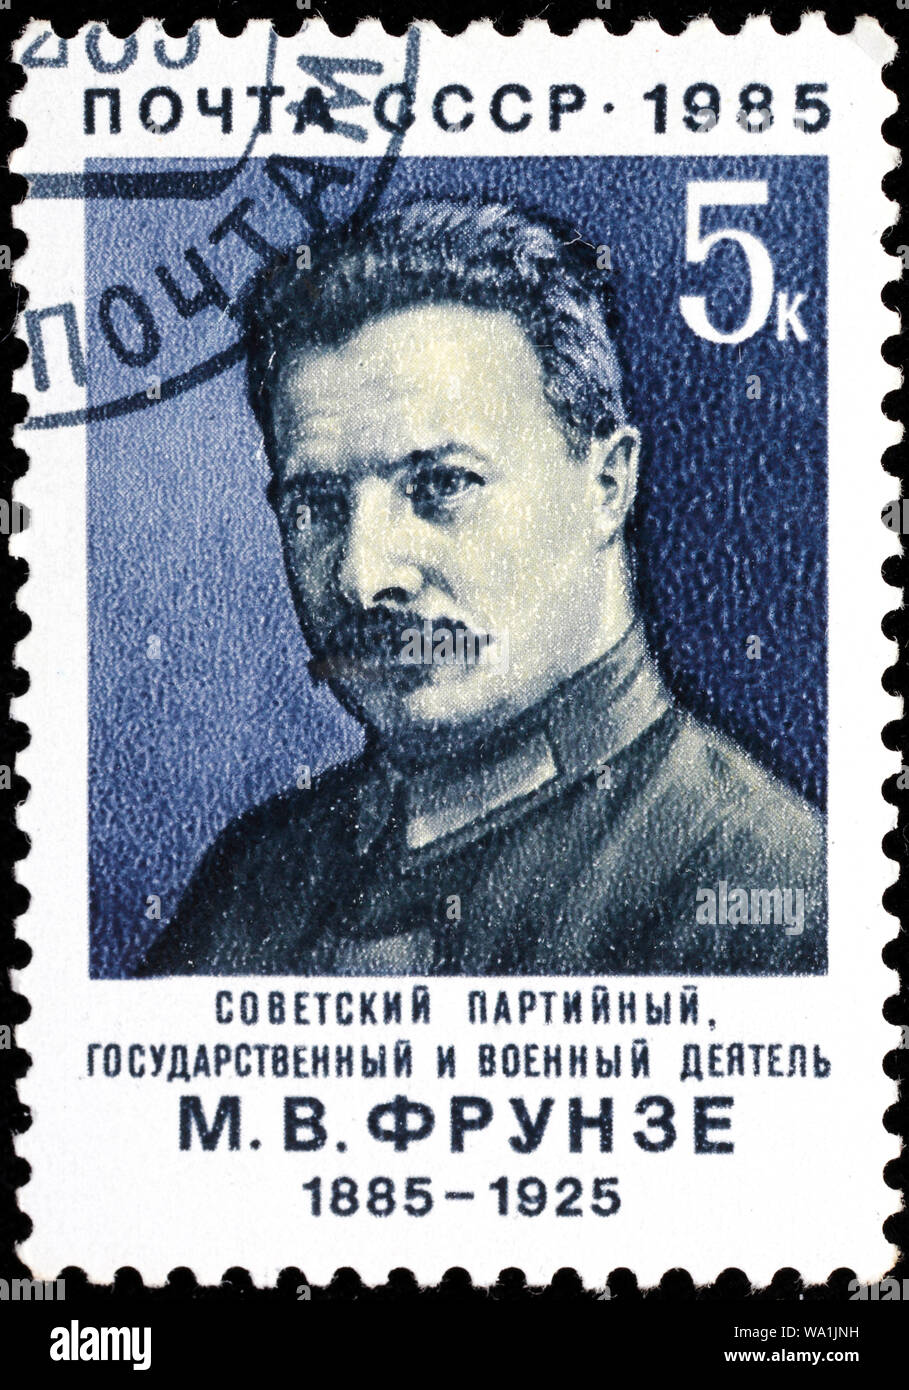 Mikhaïl Frounze (1885-1925), le dirigeant bolchévique, l'Etat et figure militaire, timbre-poste, Russie, URSS, 1985 Banque D'Images